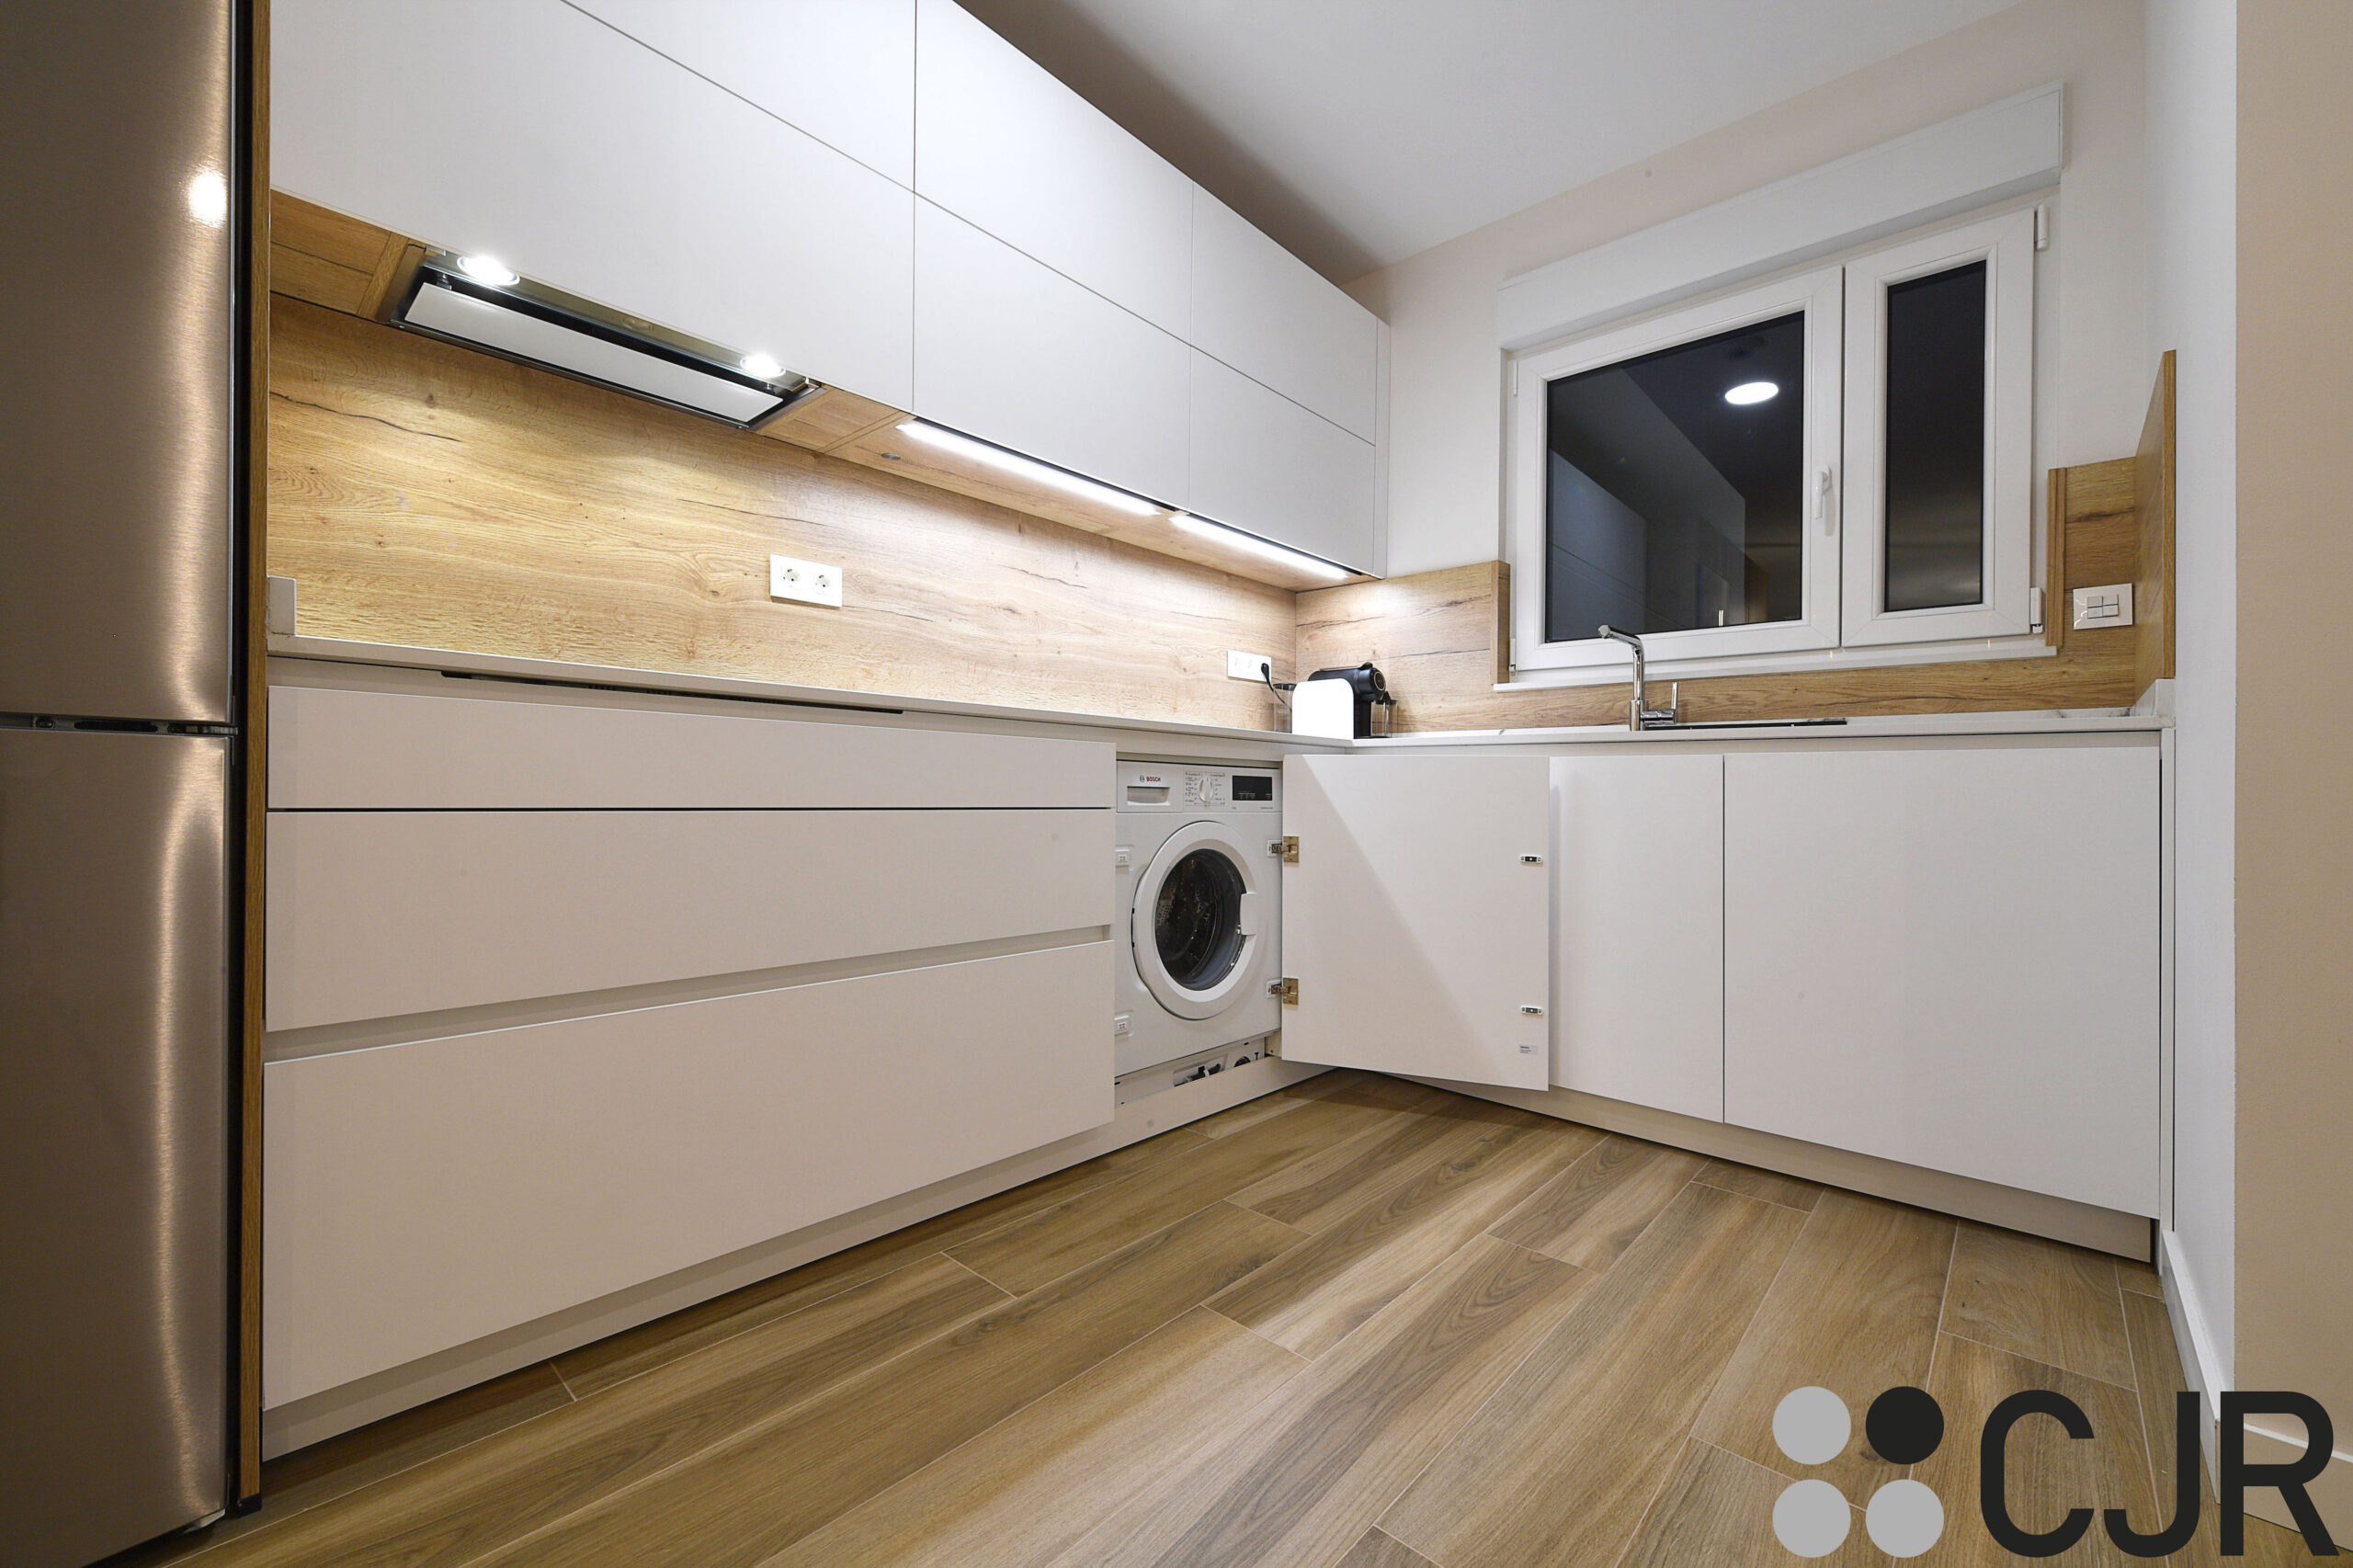 lavadora integrada en cocina madera y blanca abierta al salon cjr